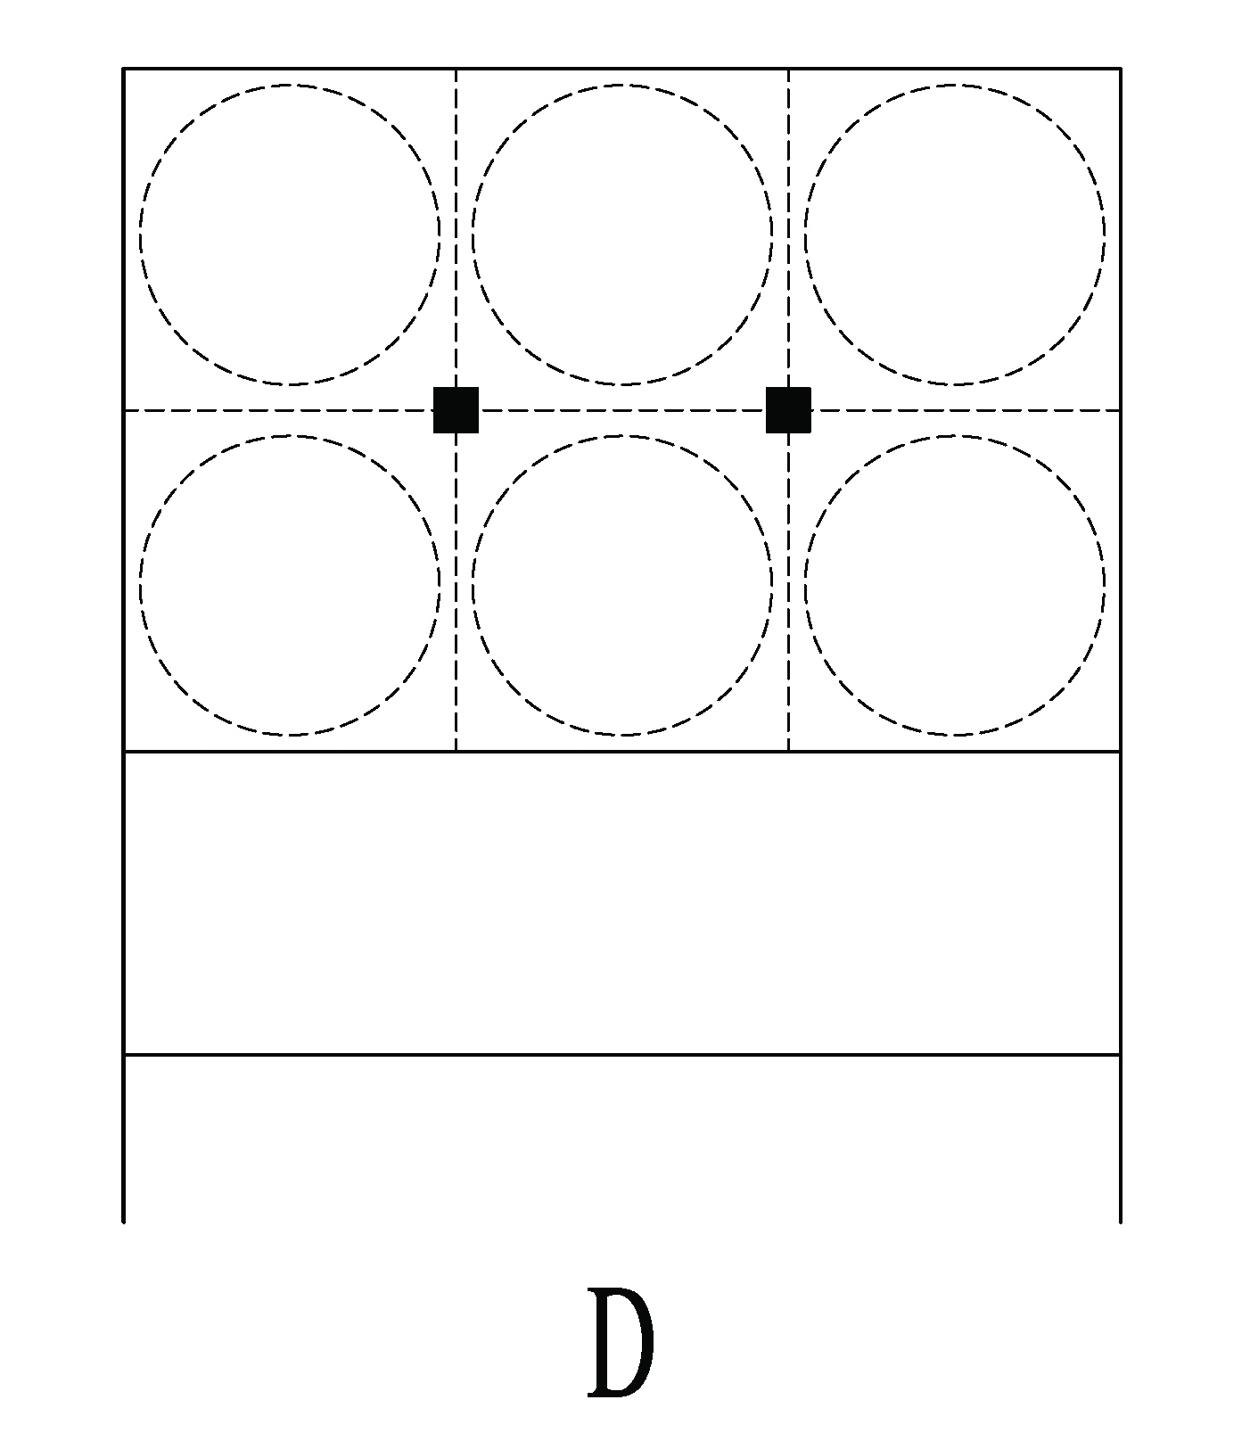 Schema 4-'D' type schematic planning